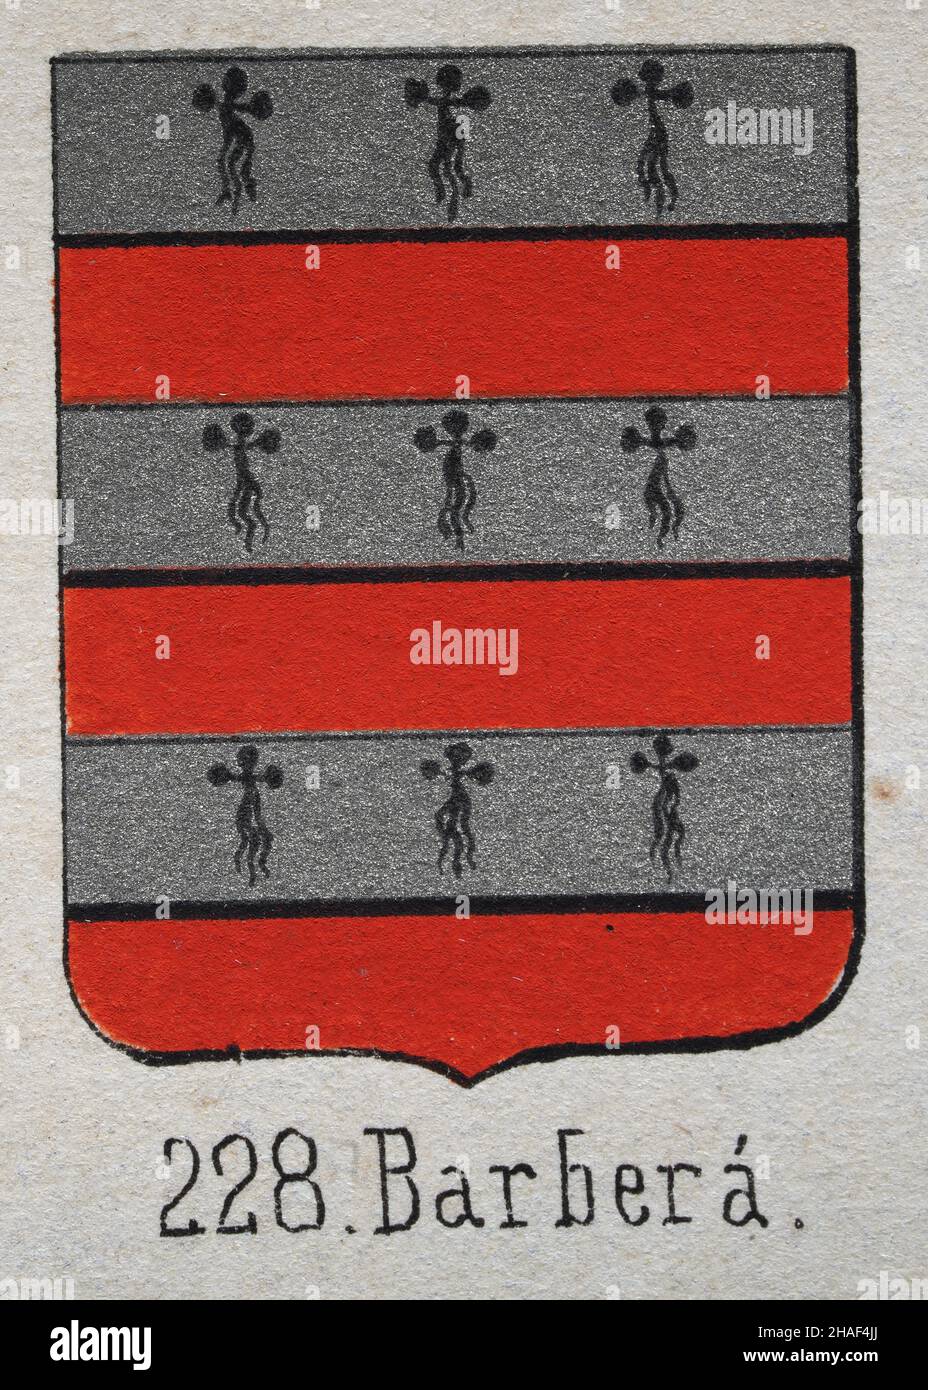 Barbera heraldry, illustration d'un blason, bandes rouge argent, symboles de bouclier héraldique Banque D'Images